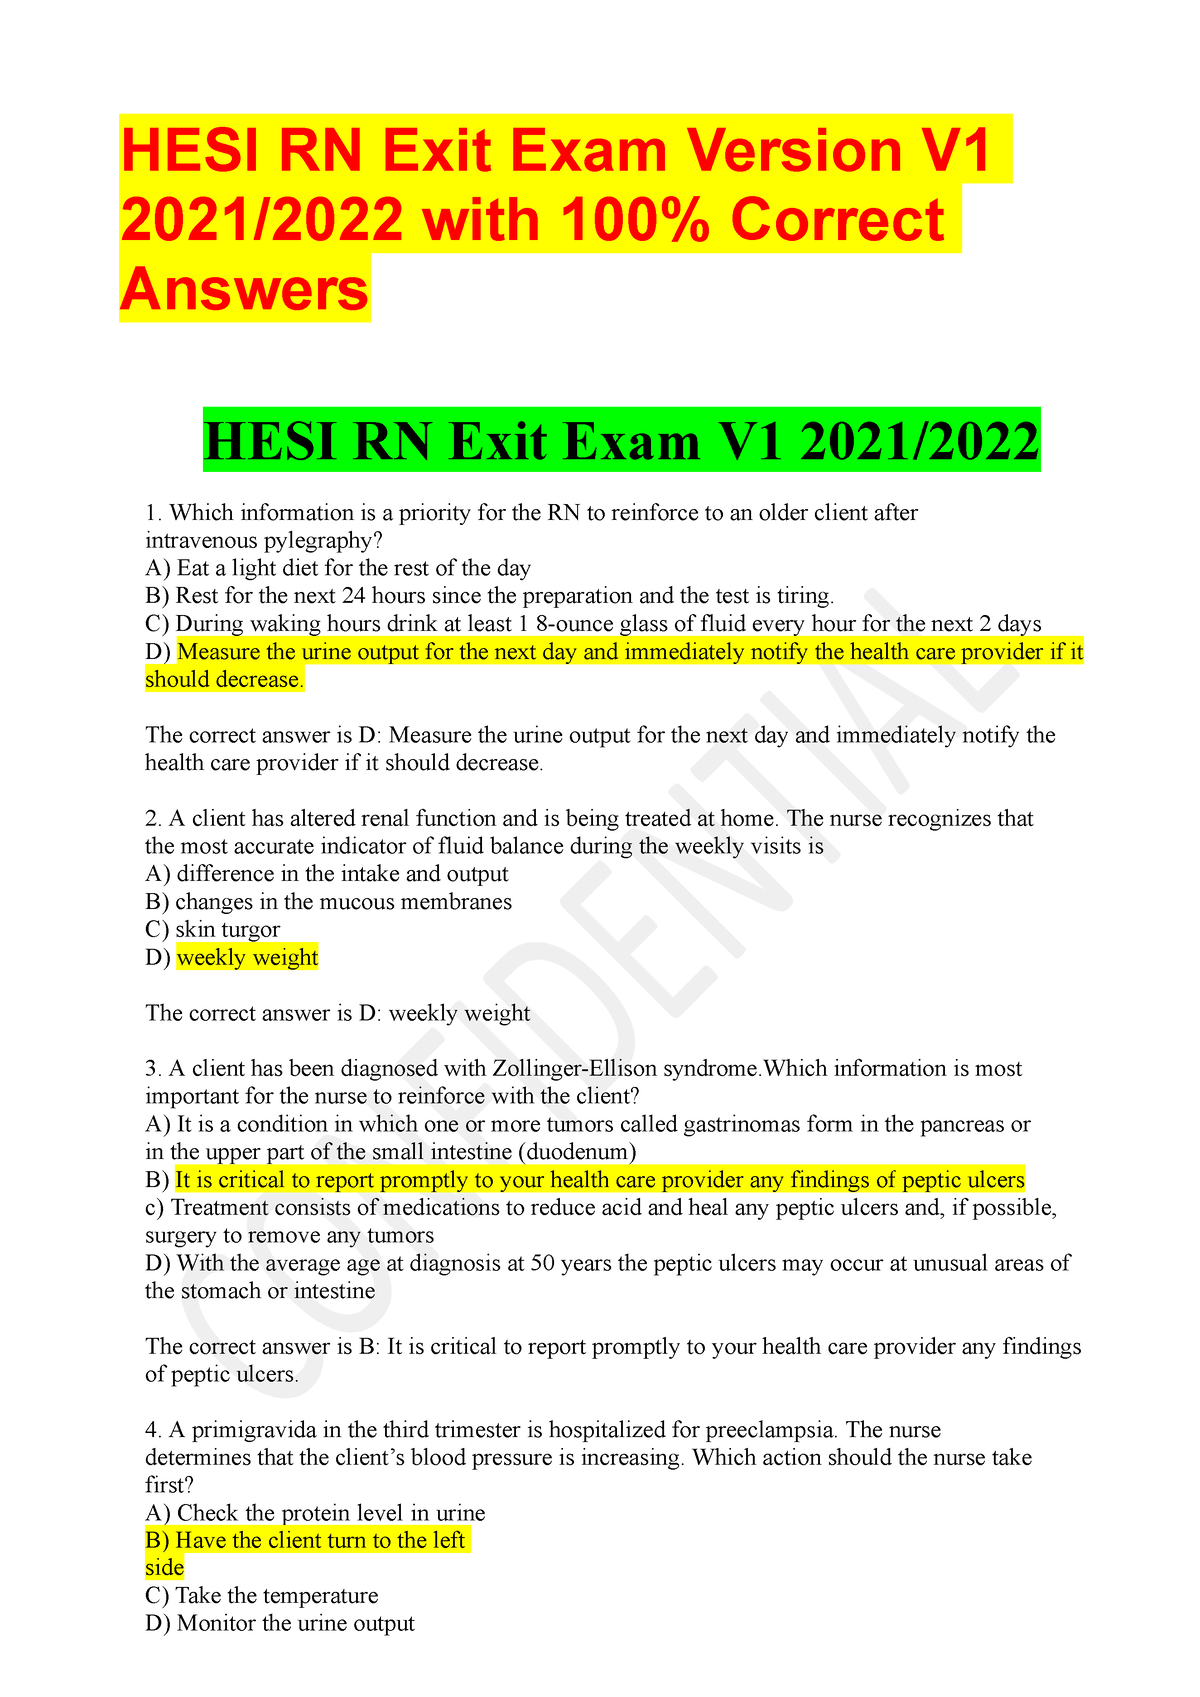 hesi-rn-exit-exam-v1-20212022-hesi-rn-exit-exam-version-v-2021-2022